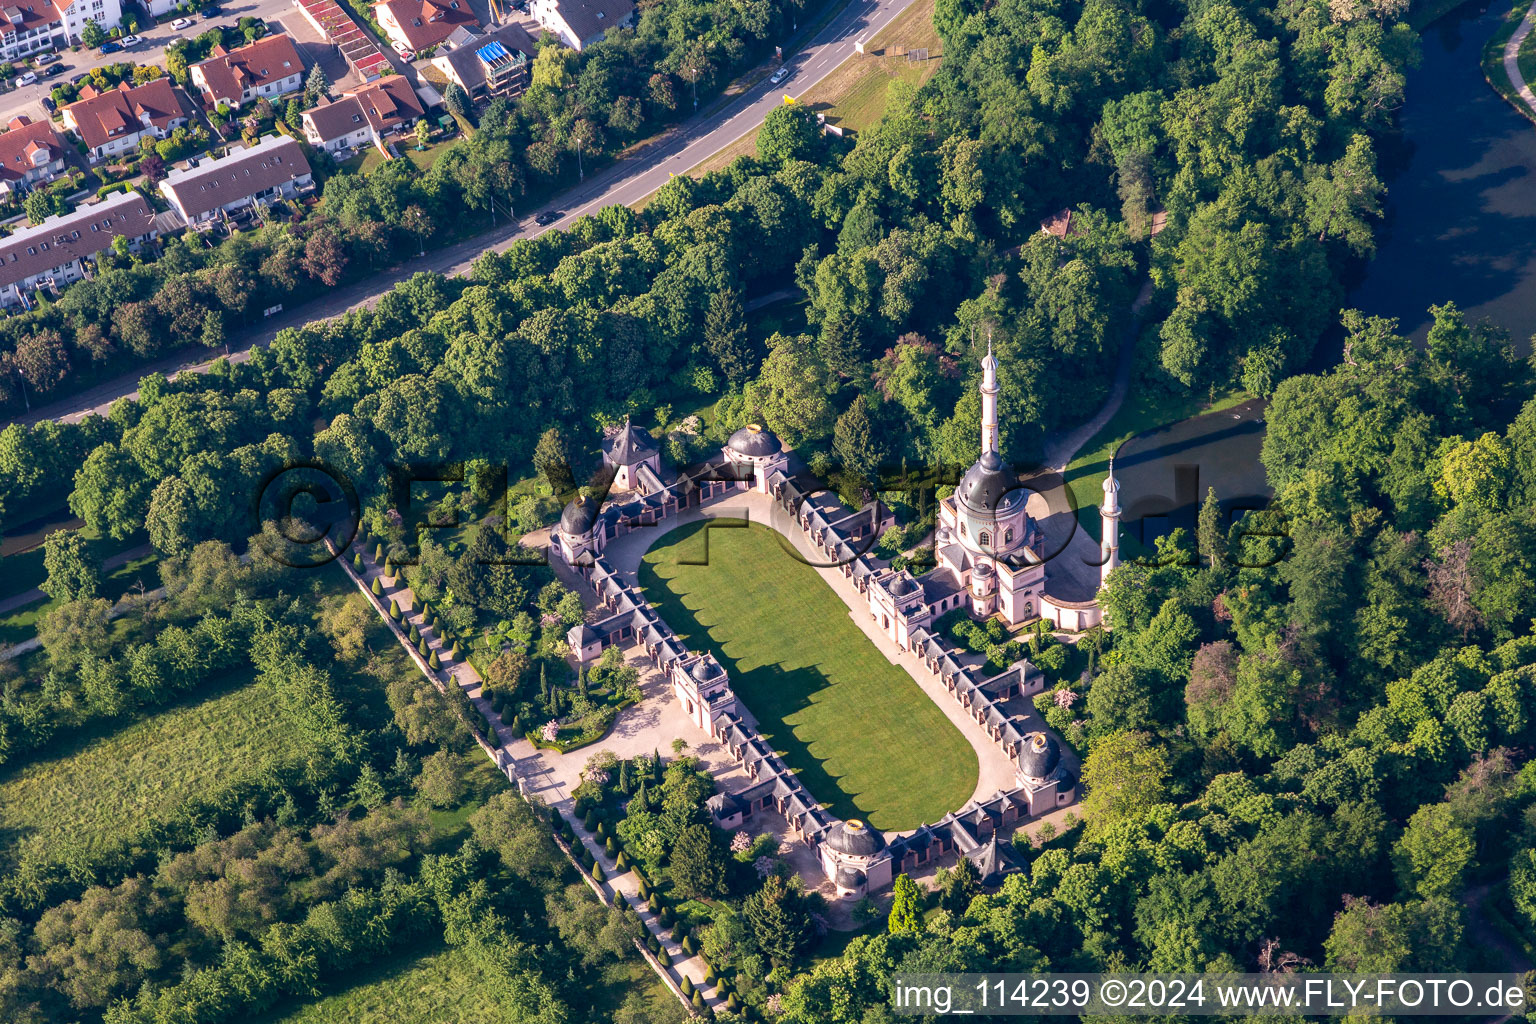 Photographie aérienne de Vue sur le château Schwetzingen et le jardin baroque à la française. Le château servait de résidence d'été aux électeurs du Palatinat et a été construit sous sa forme actuelle en 1697. à Schwetzingen dans le département Bade-Wurtemberg, Allemagne